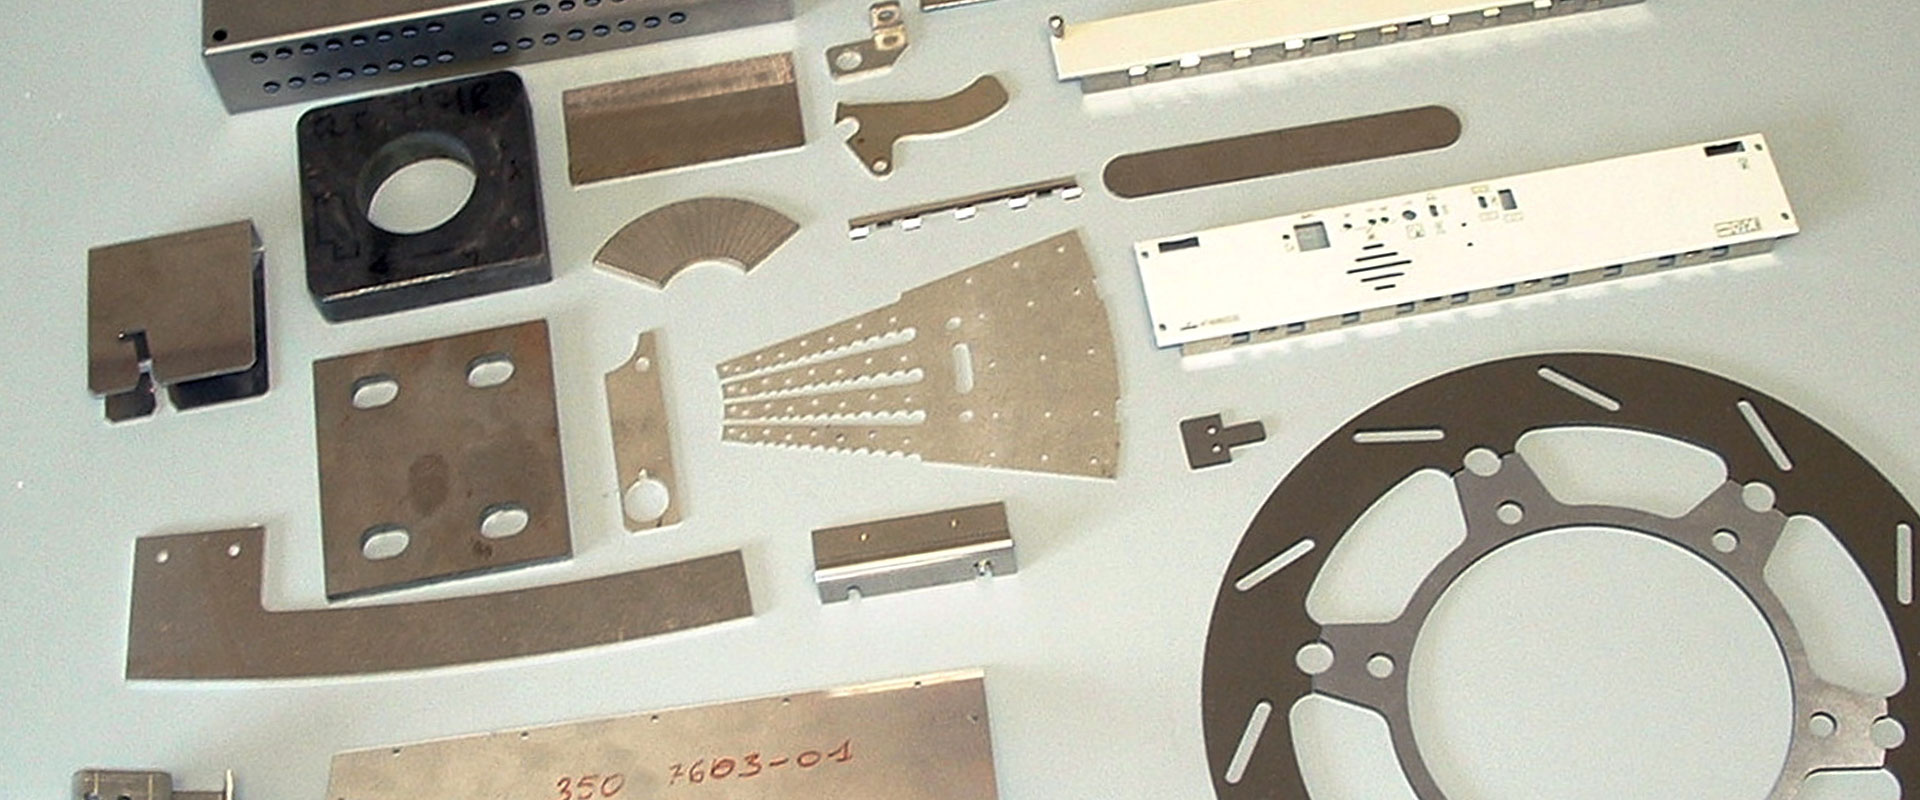 Comen Carpenterie metalliche e Carrozzerie per macchine utensili 0817733136  piccole per acciaio lega Carpenterie 